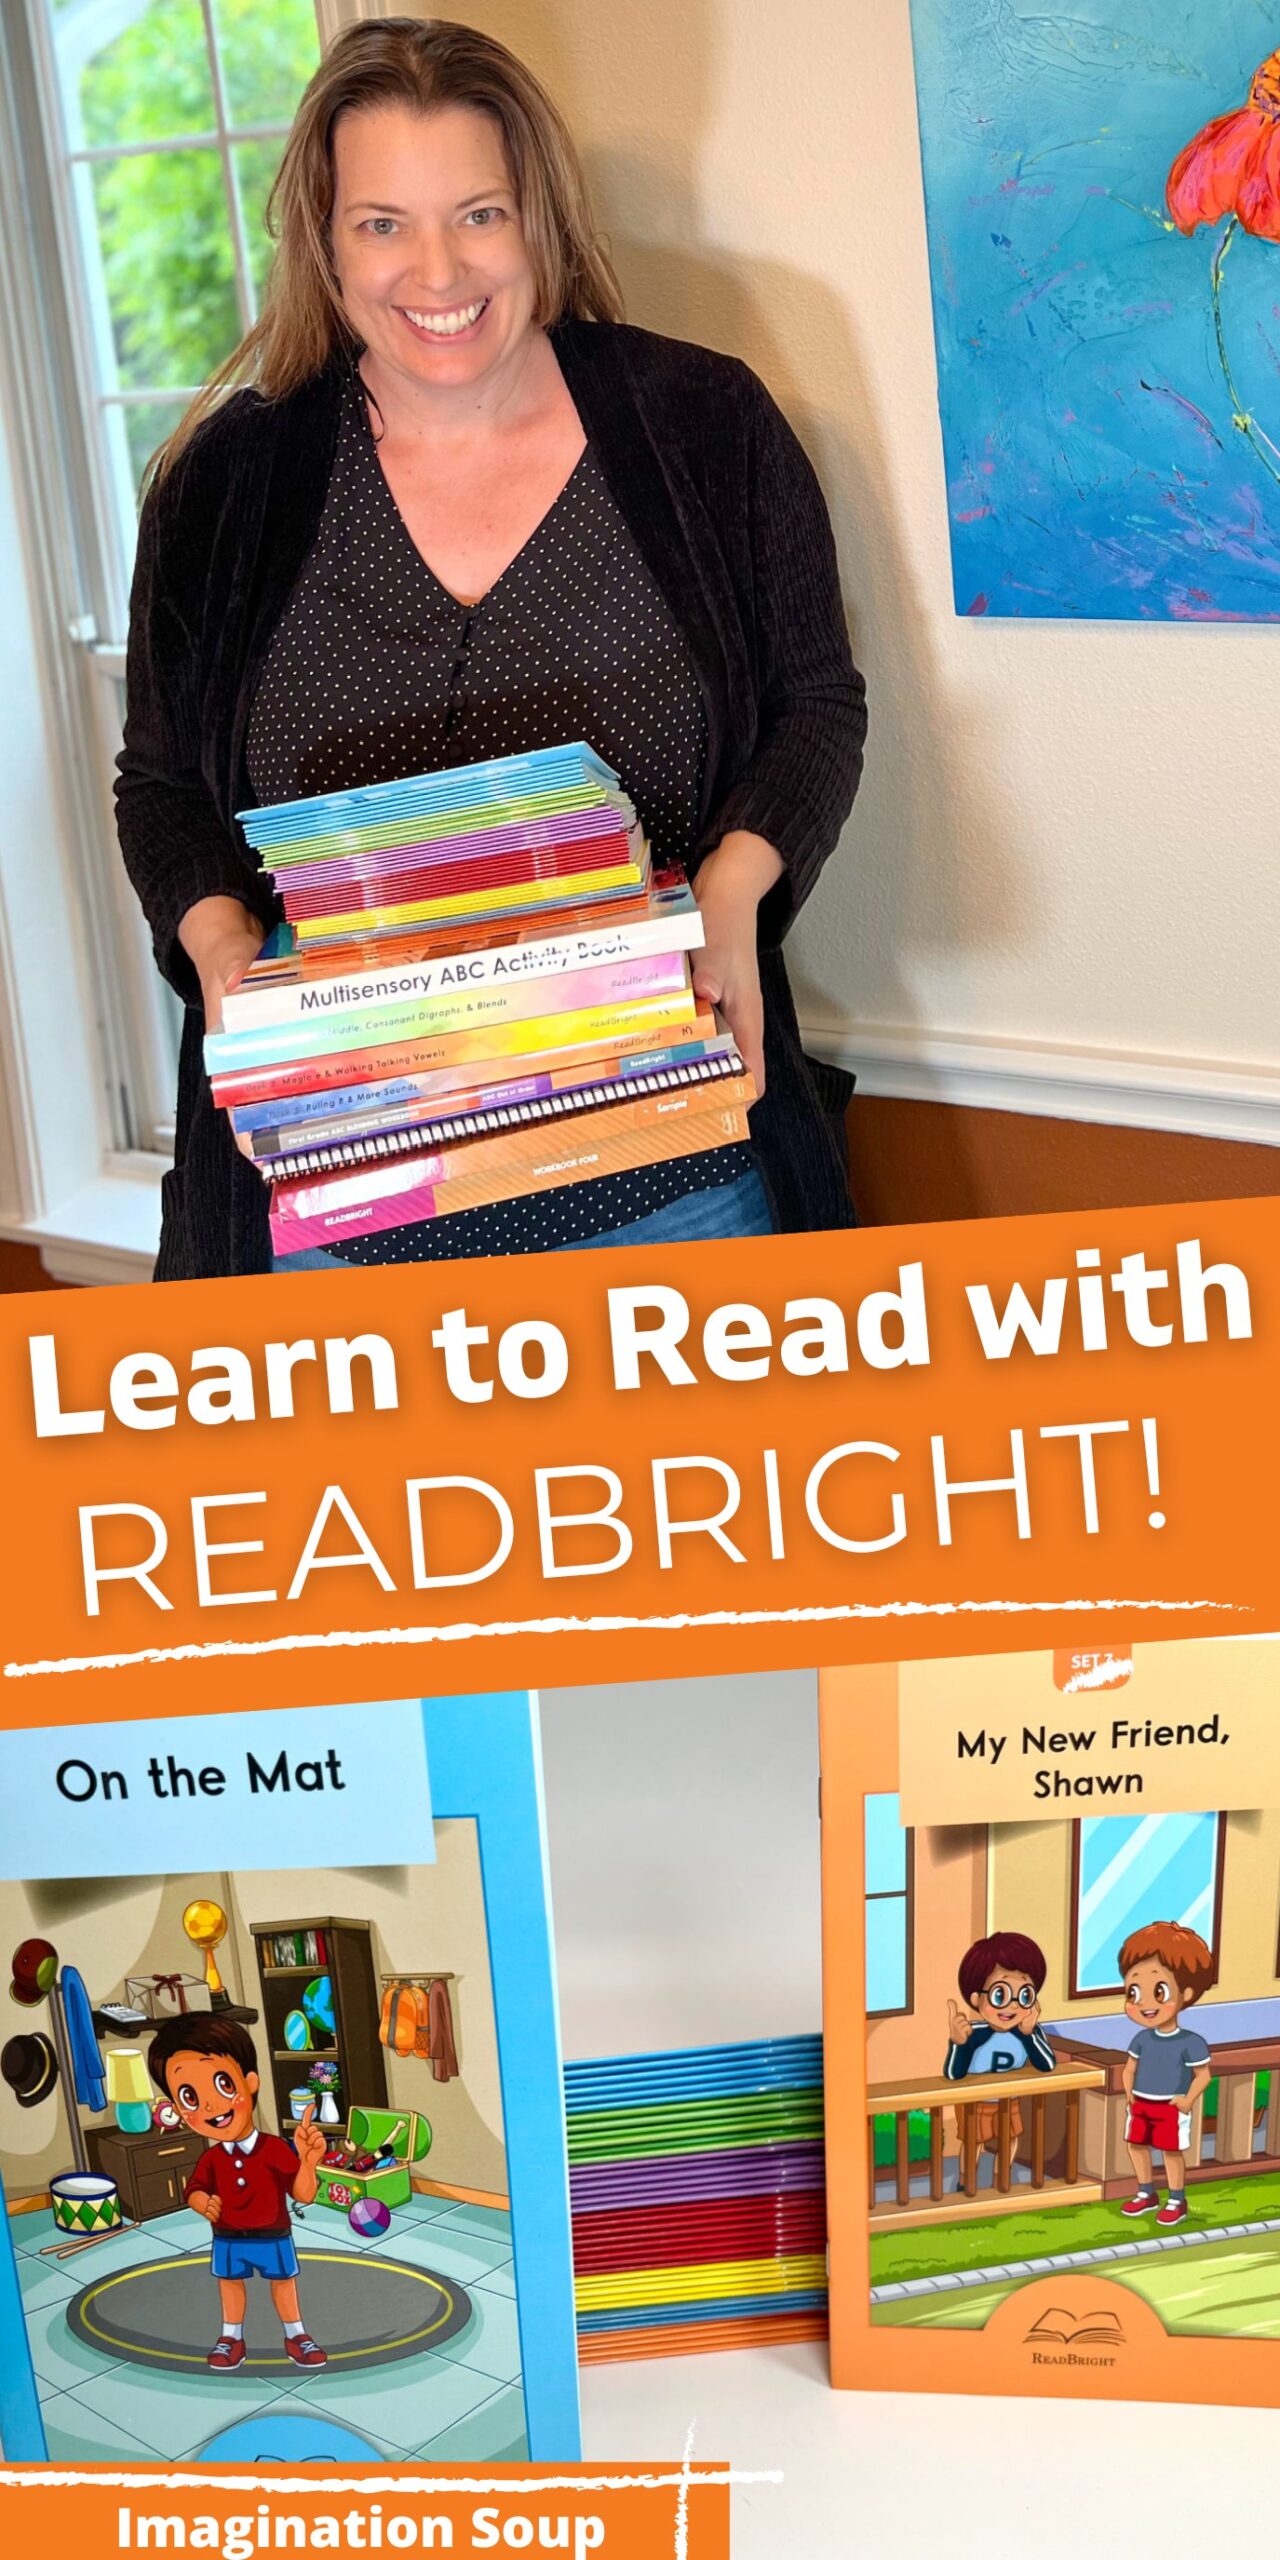 Cómo enseñar a leer a un niño usando el programa ReadBright Phonics